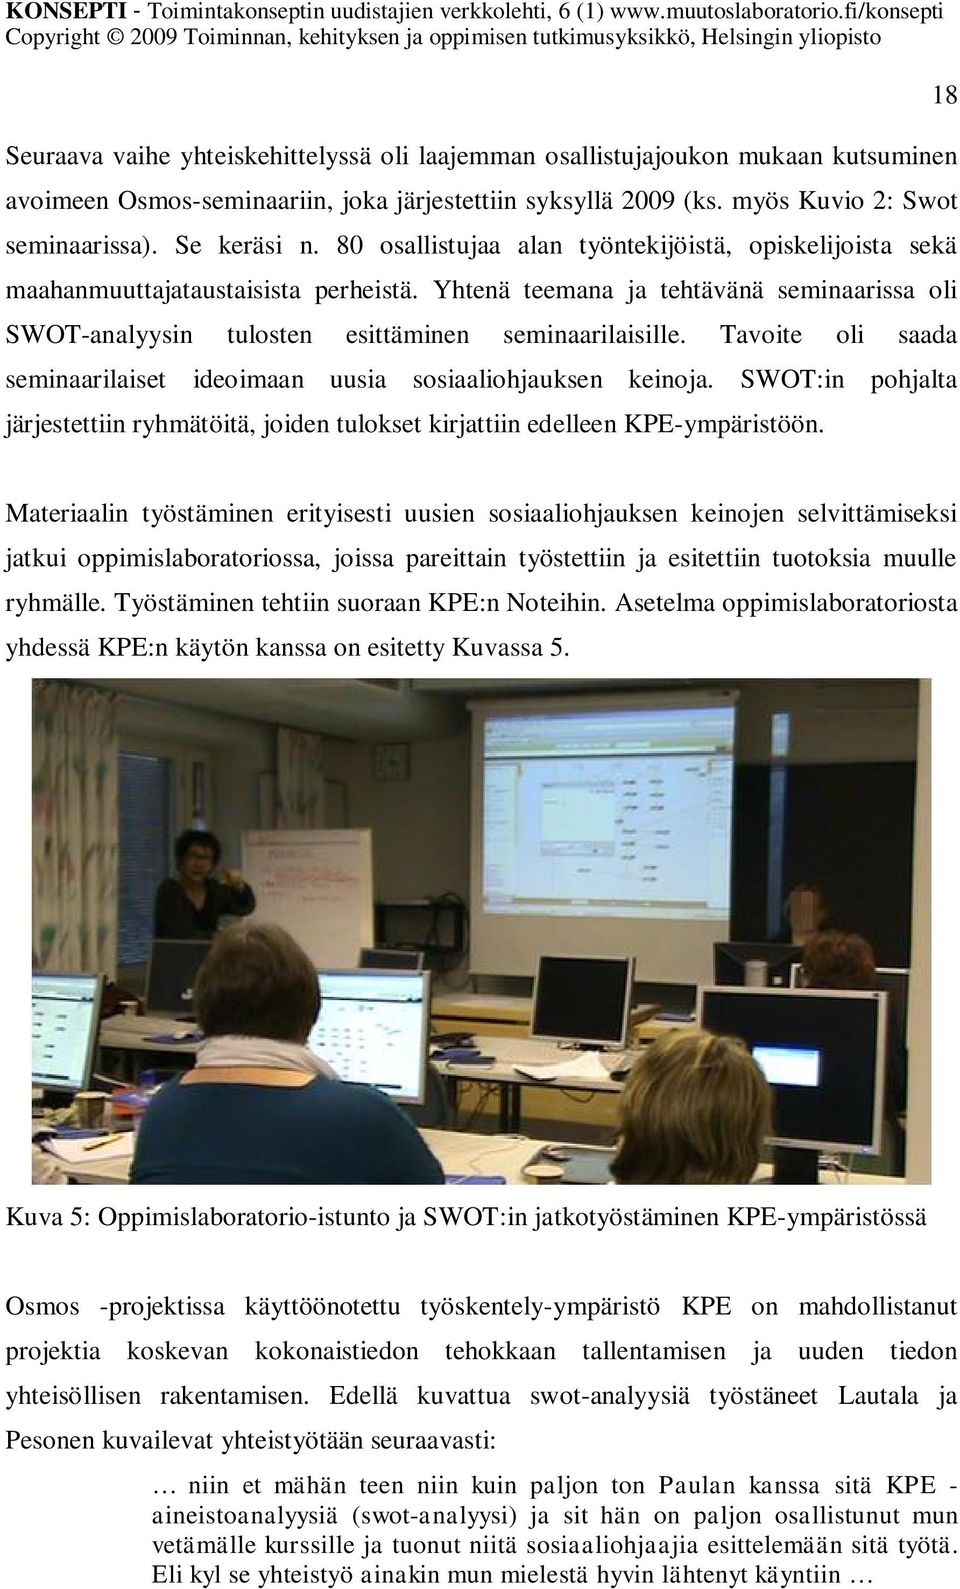 Tavoite oli saada seminaarilaiset ideoimaan uusia sosiaaliohjauksen keinoja. SWOT:in pohjalta järjestettiin ryhmätöitä, joiden tulokset kirjattiin edelleen KPE-ympäristöön.